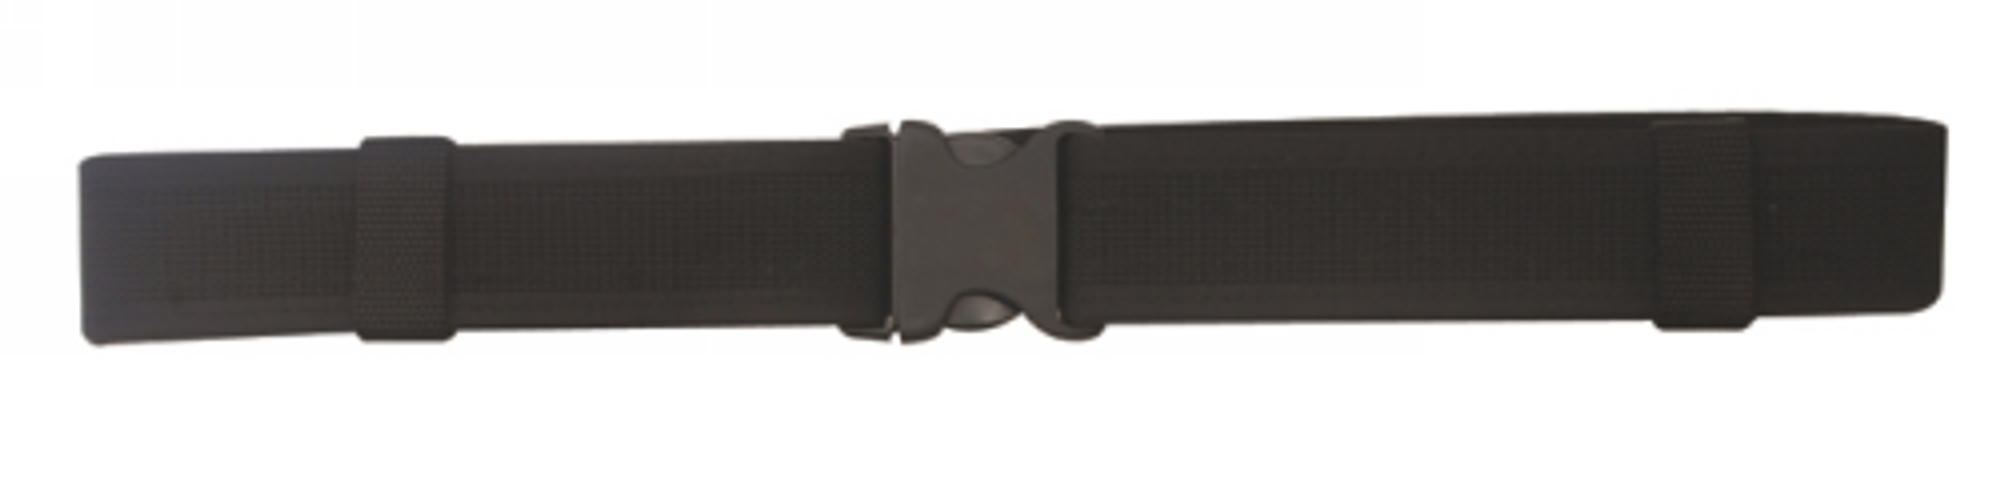 Duty Belt - KRTSP-4112004